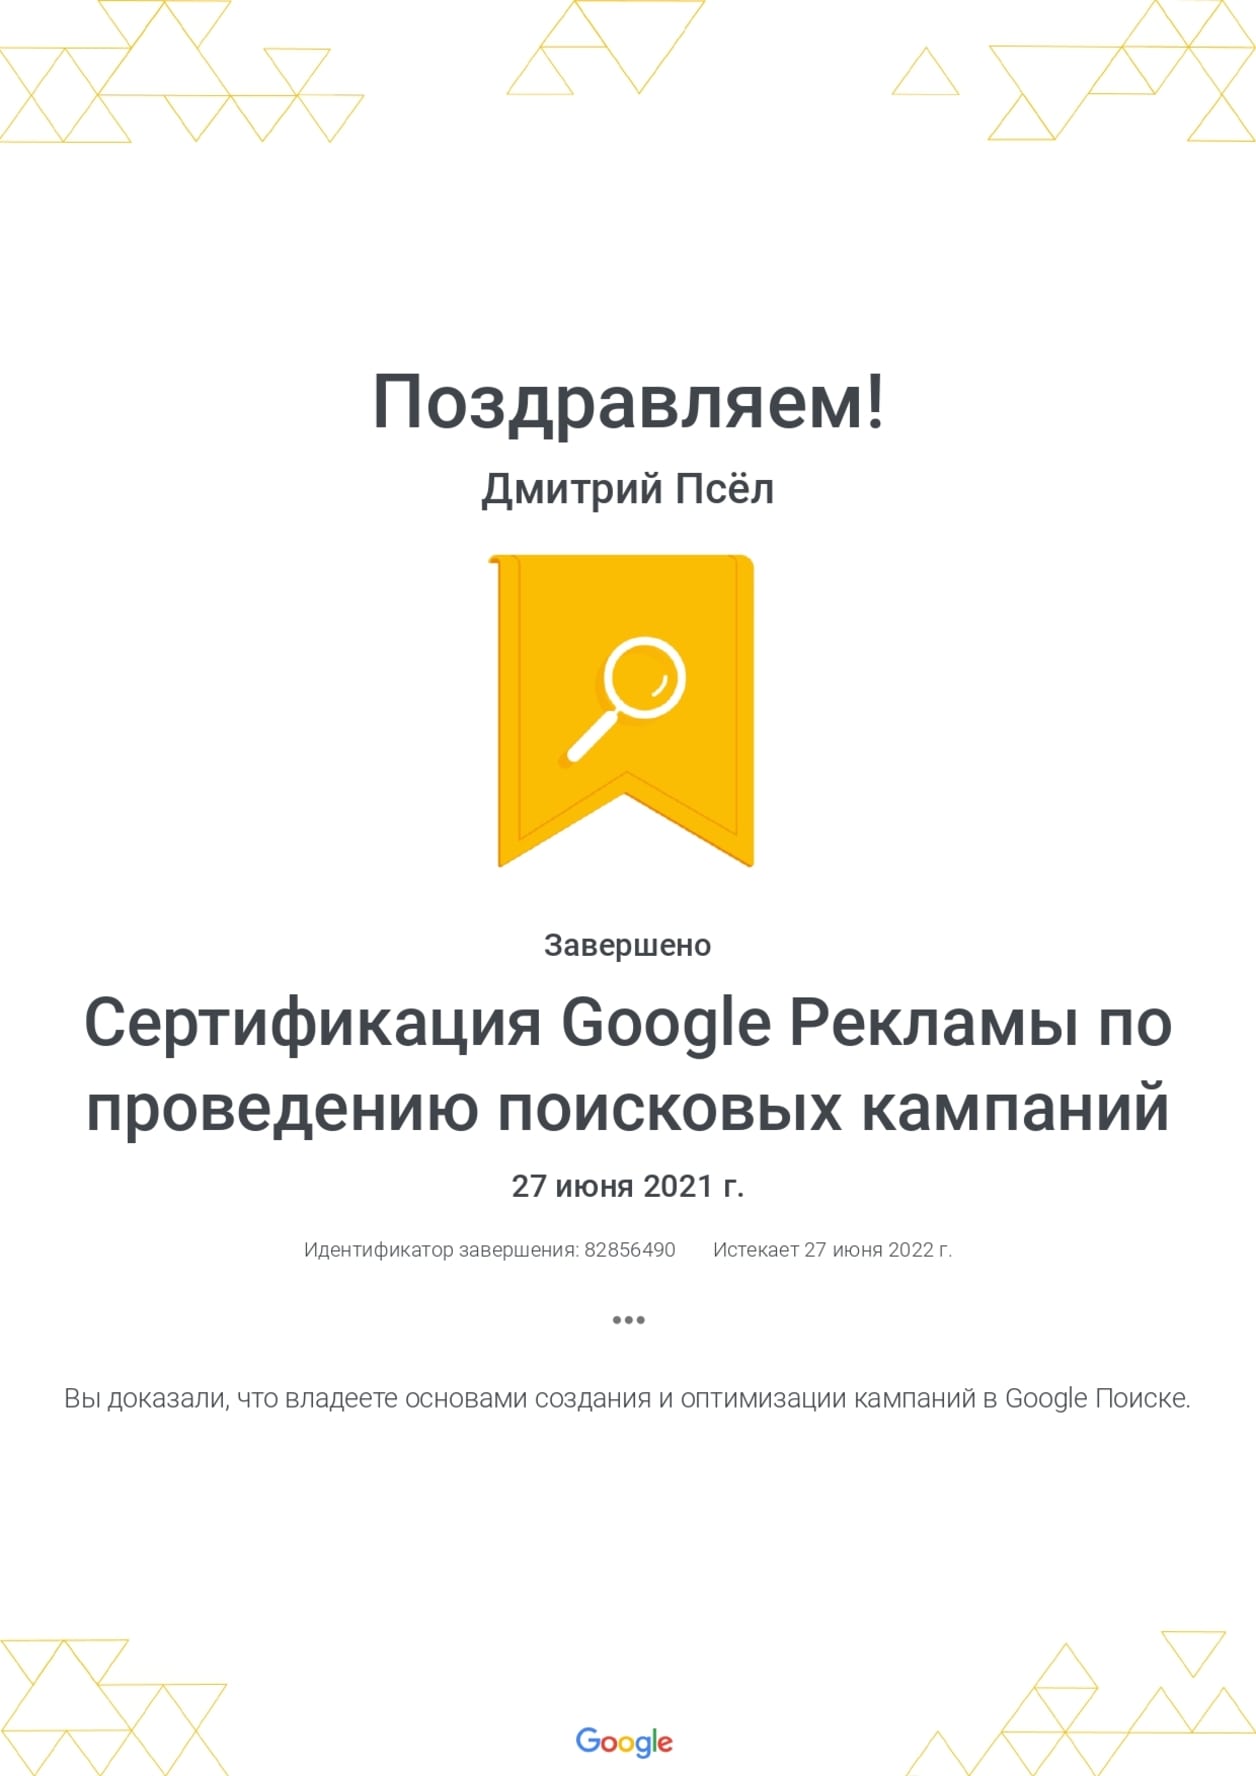 Дмитрий Псёл - сертификат по проведению поисковых кампаний